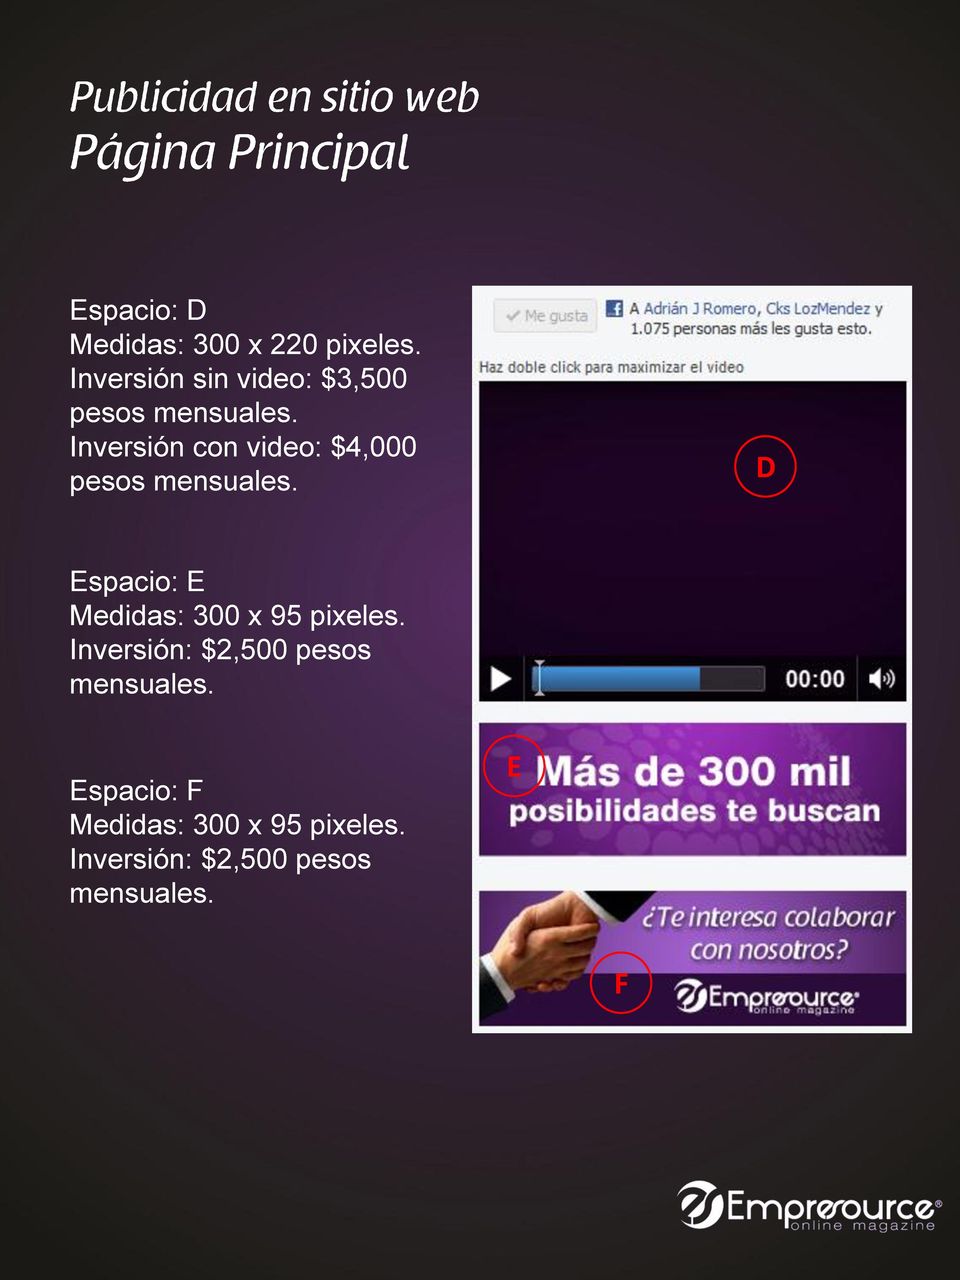 Inversión con video: $4,000 pesos mensuales.